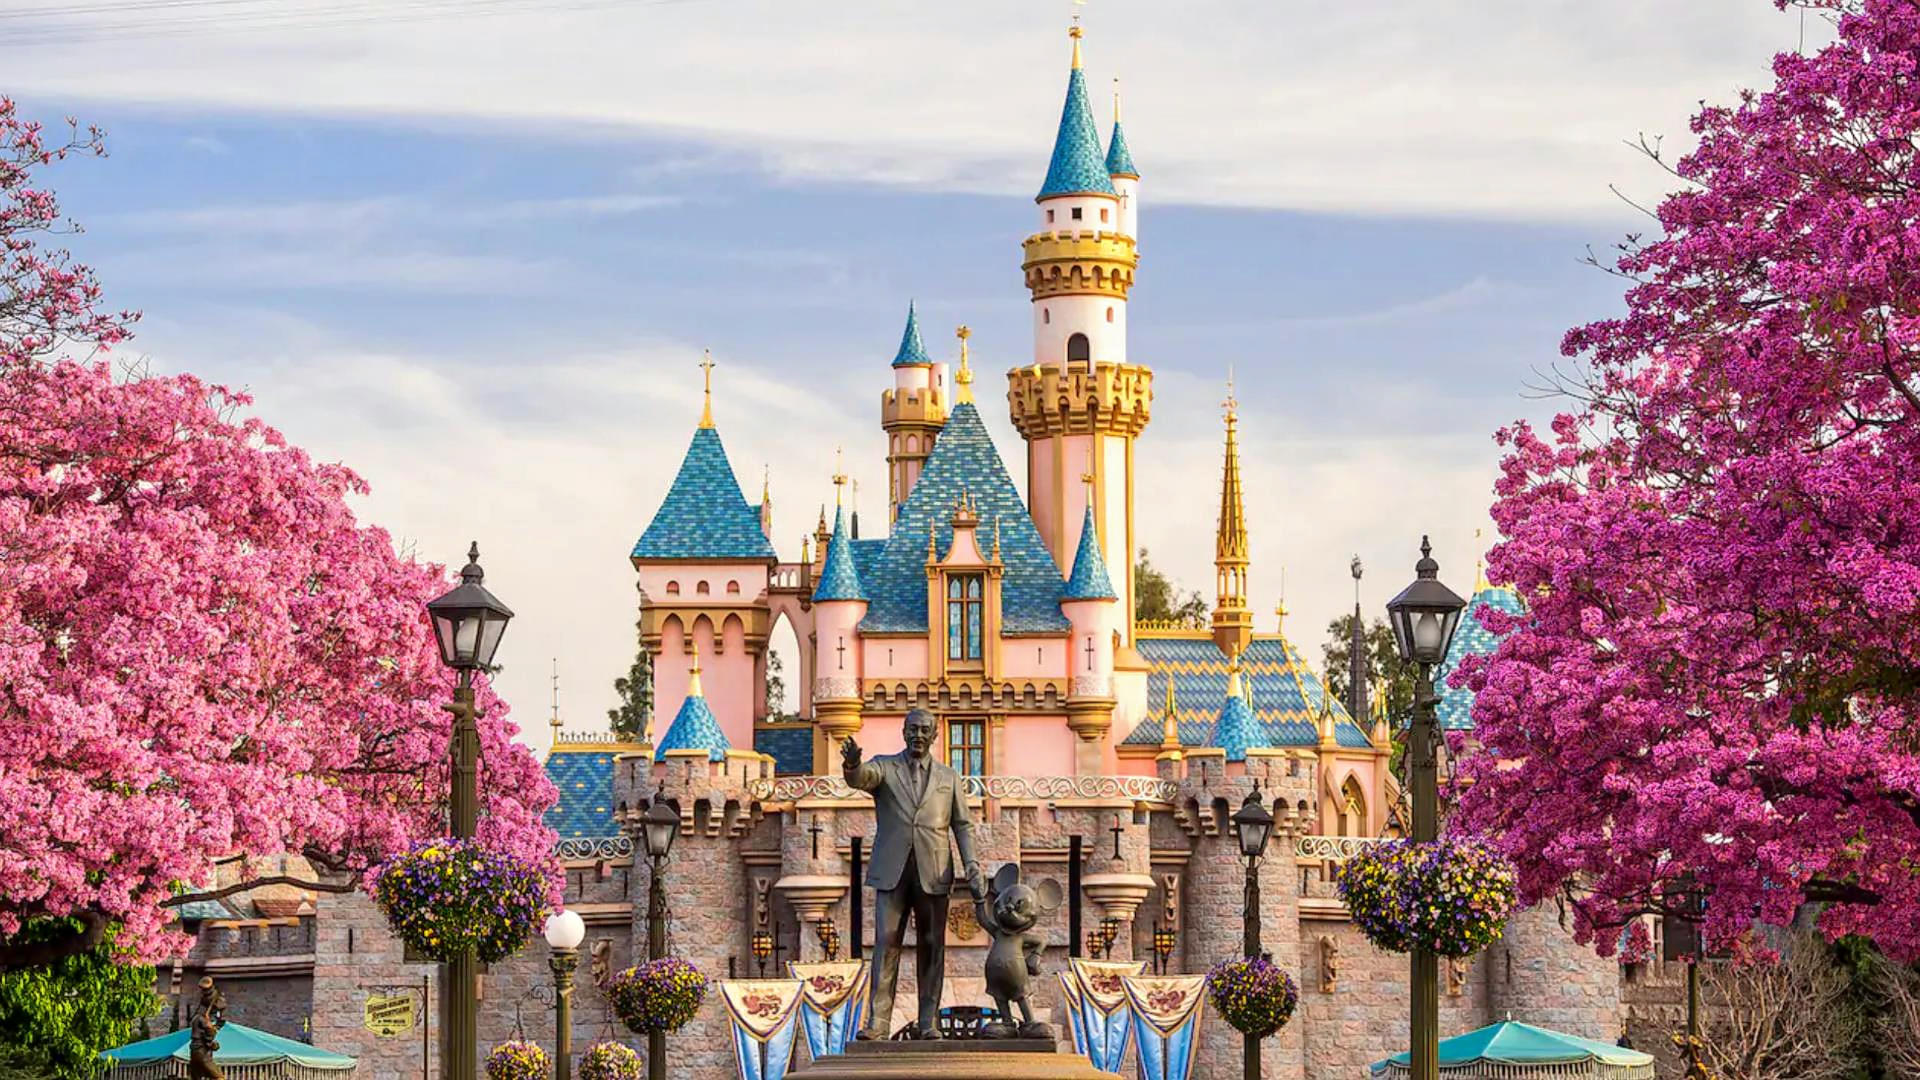 Disneyland Resort Overview